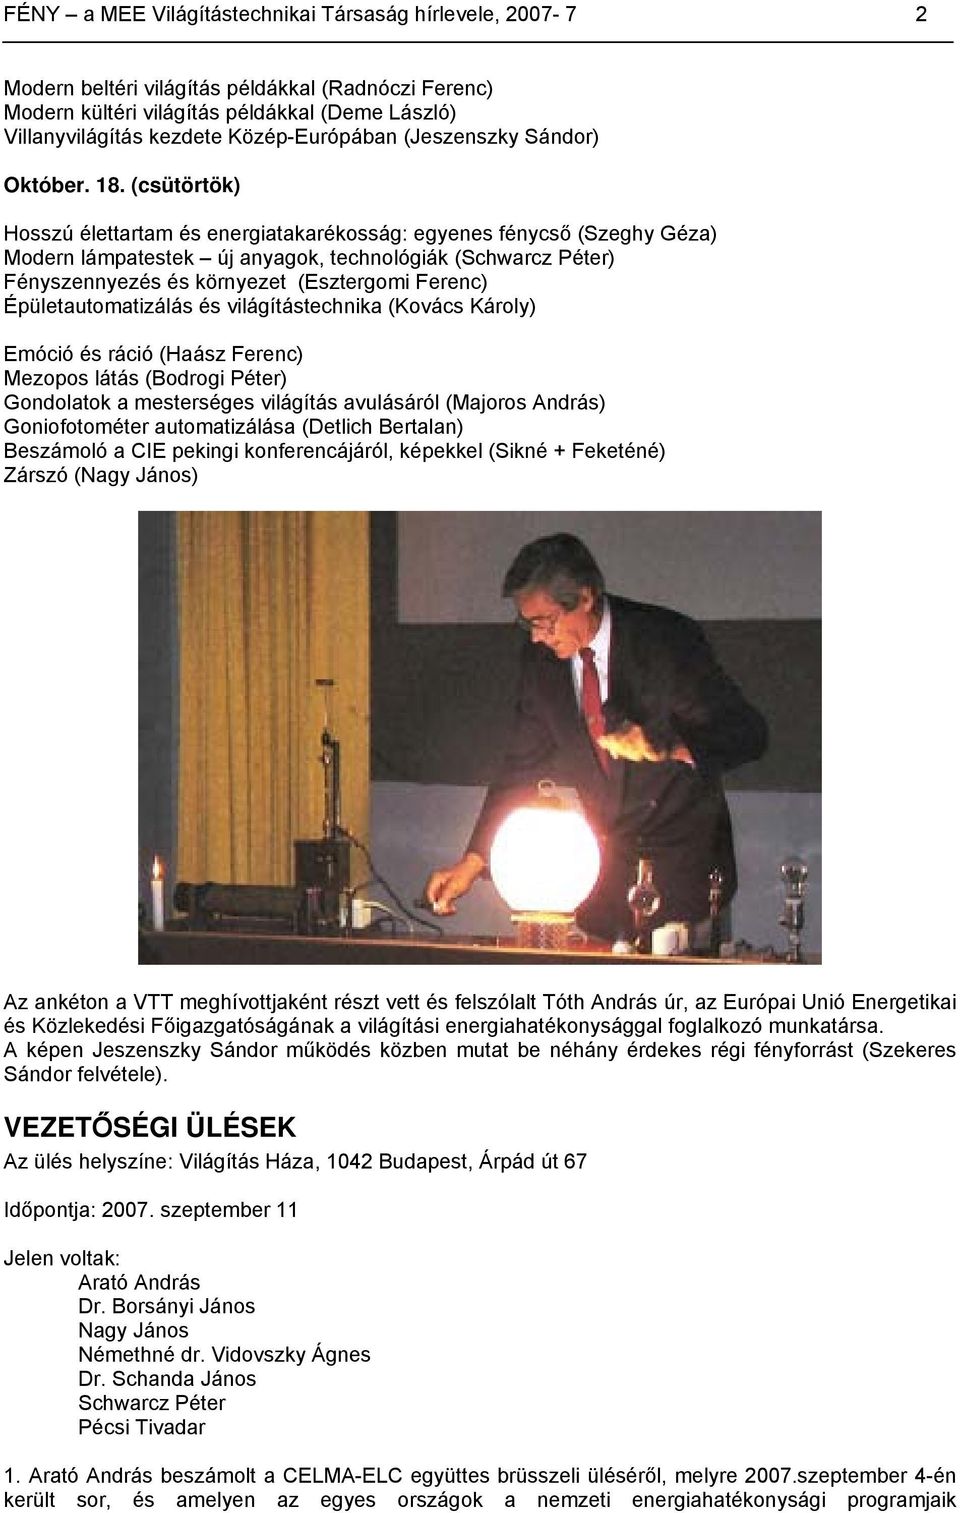 (csütörtök) Hosszú élettartam és energiatakarékosság: egyenes fénycső (Szeghy Géza) Modern lámpatestek új anyagok, technológiák (Schwarcz Péter) Fényszennyezés és környezet (Esztergomi Ferenc)